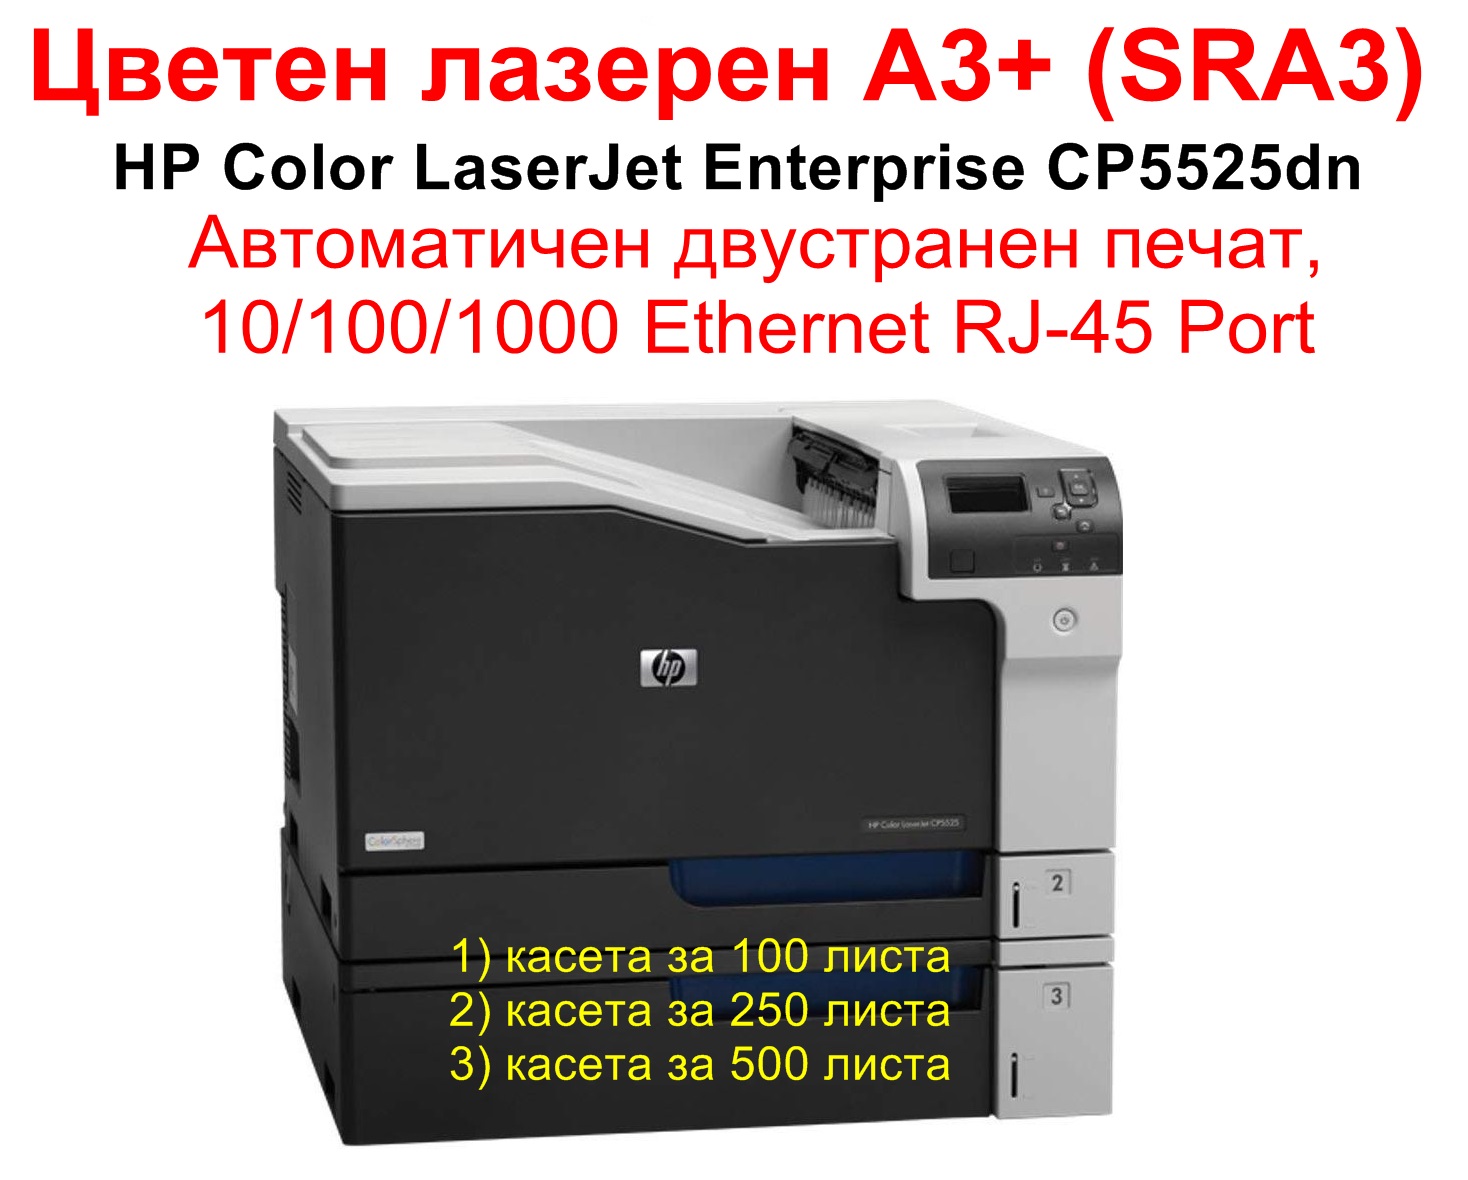 HP Color LaserJet Enterprise CP5525dn, A3